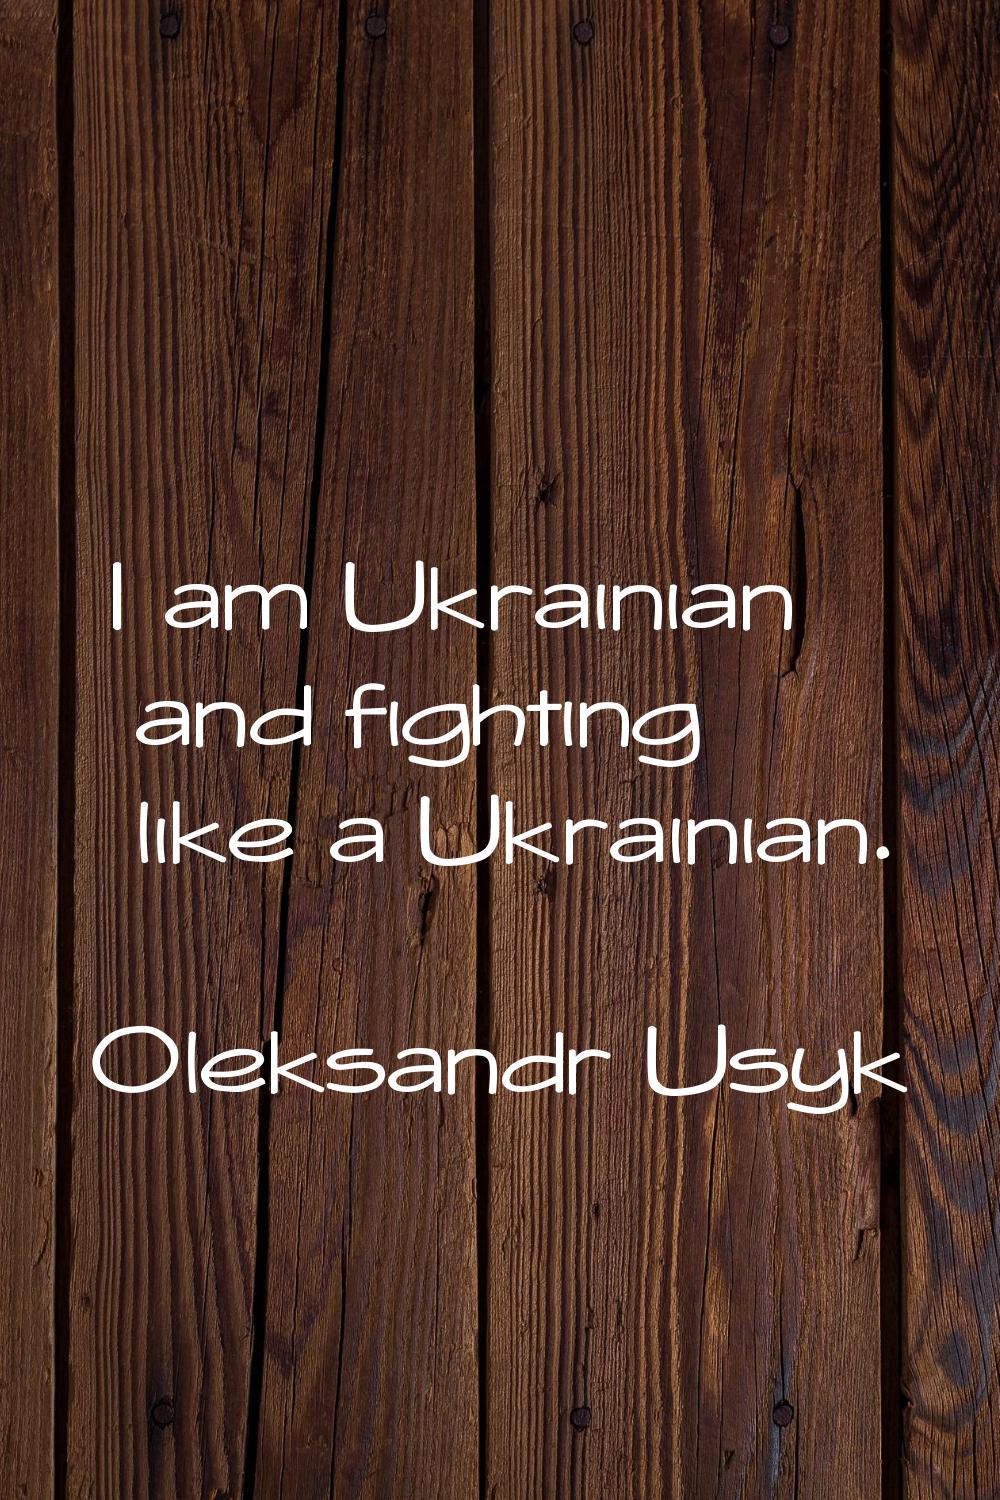 I am Ukrainian and fighting like a Ukrainian.